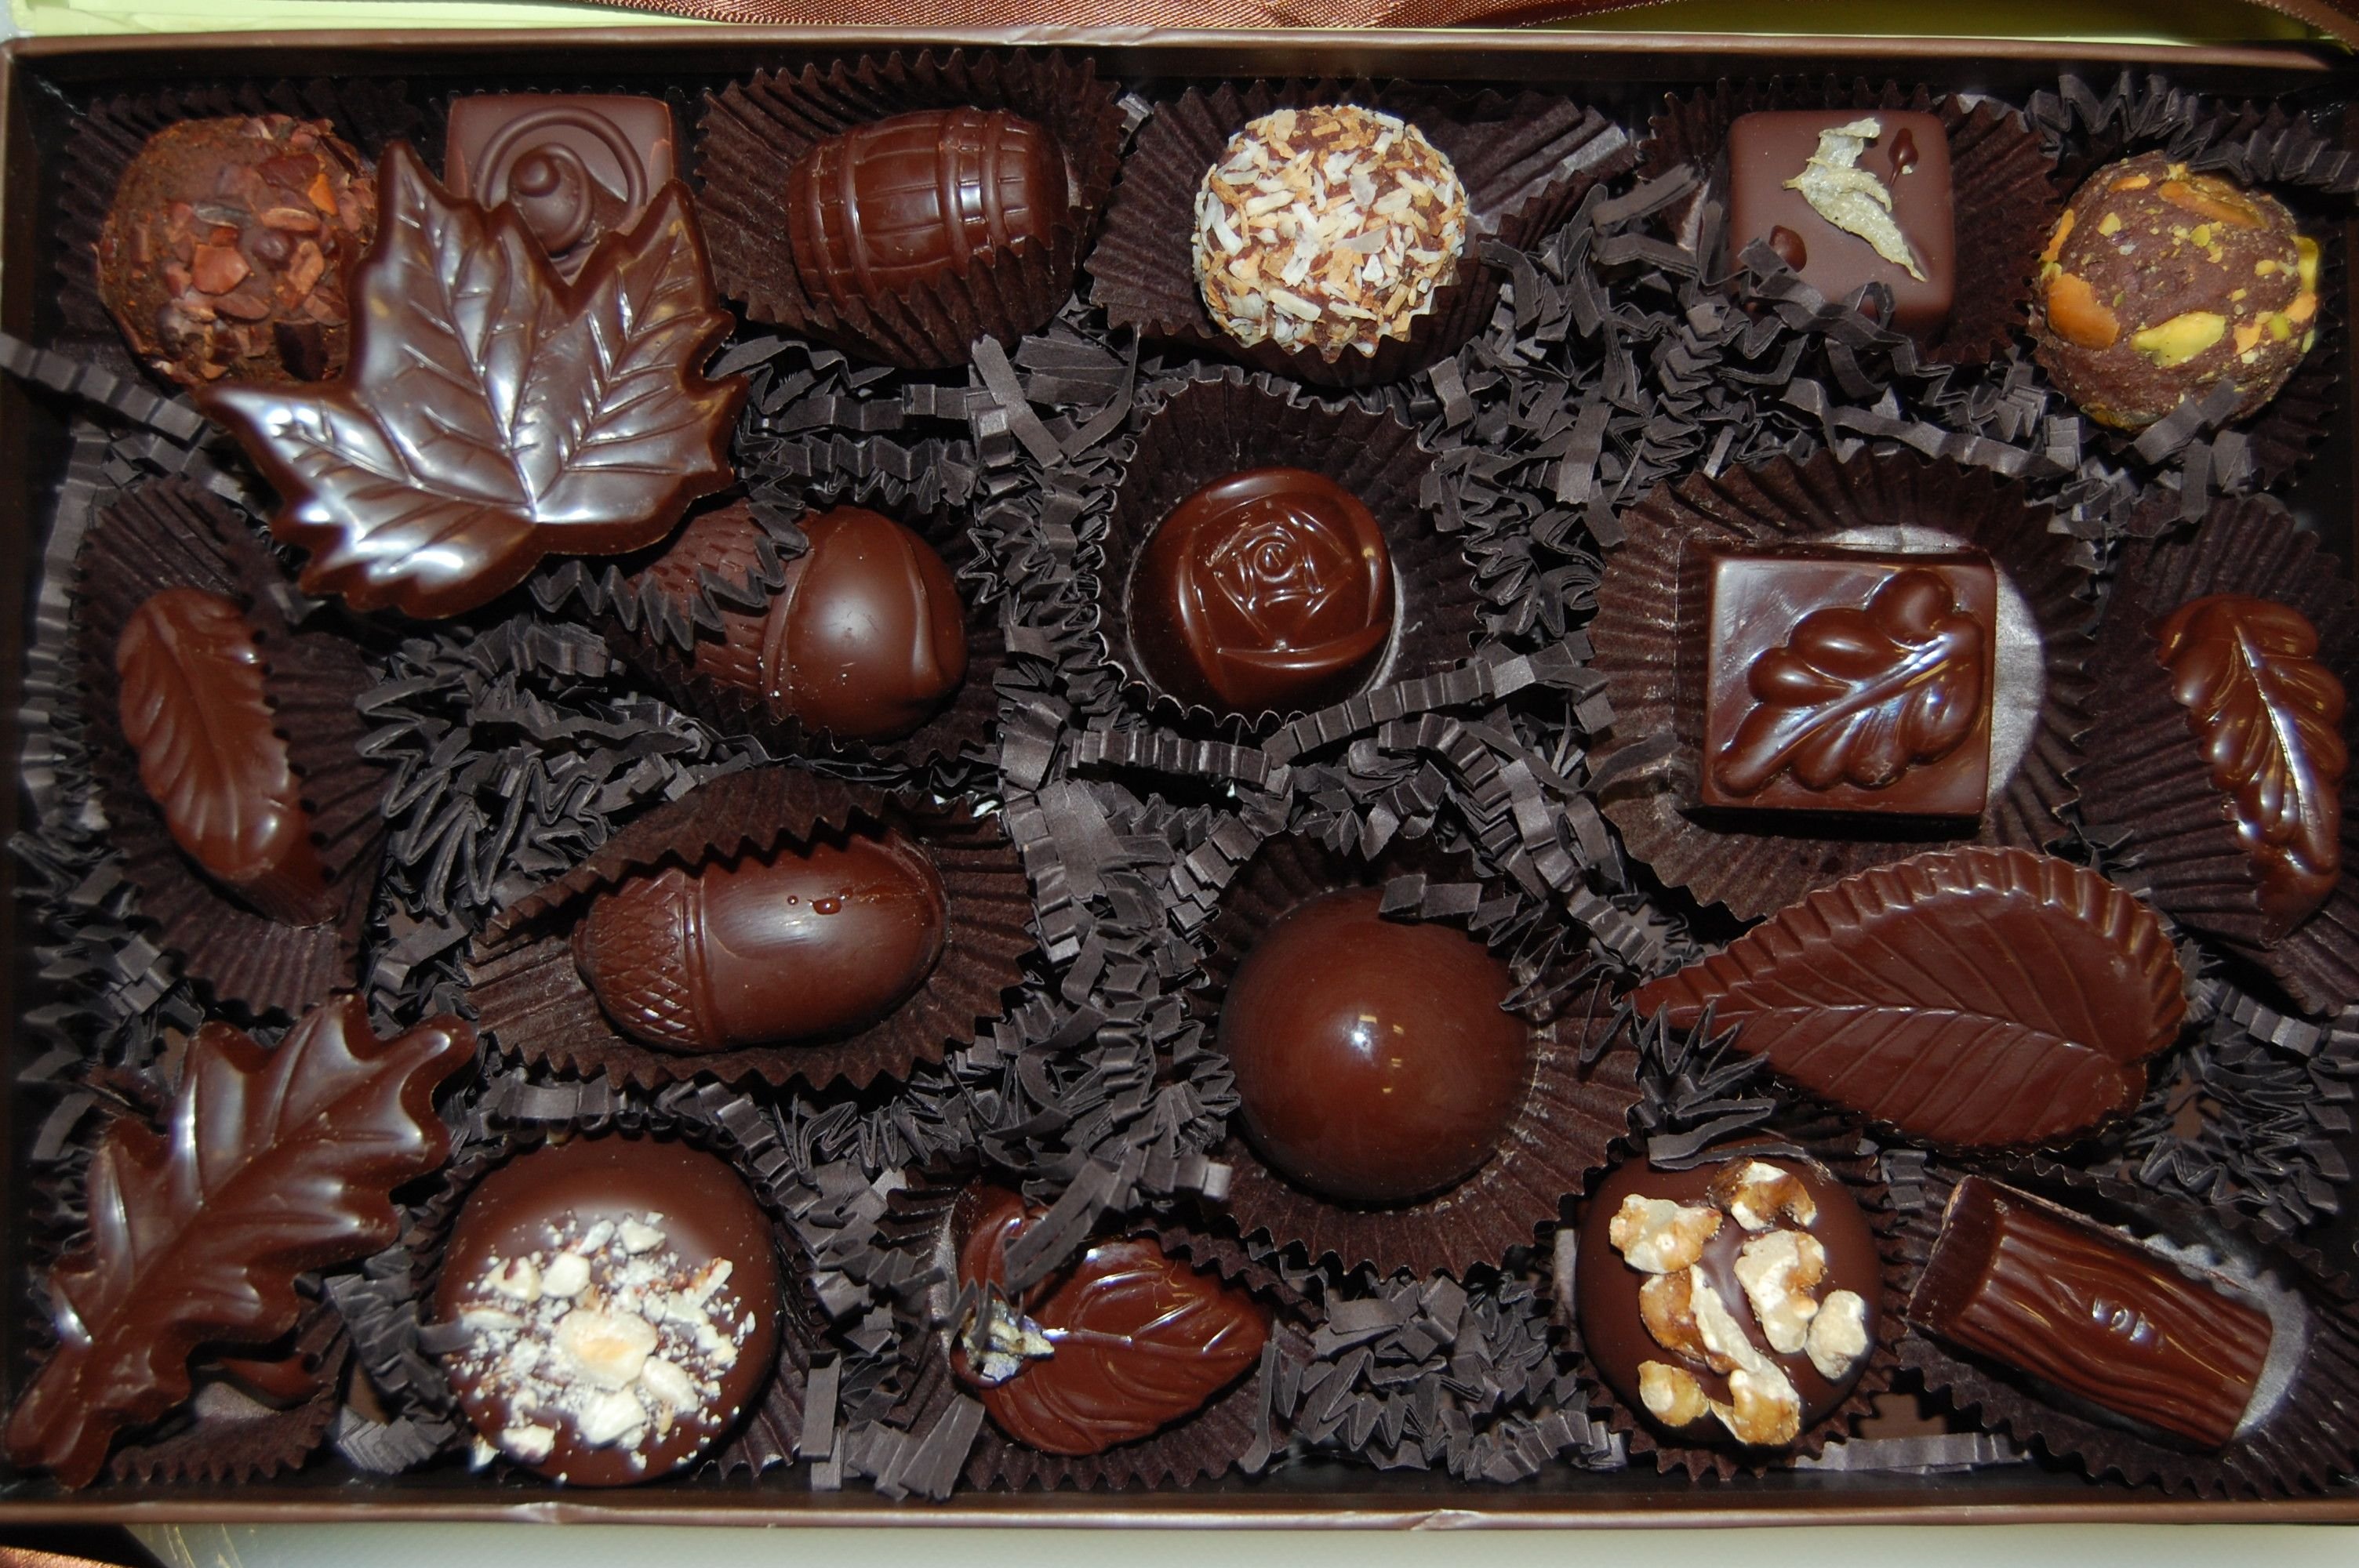 Шоколадный ассортимент. Кувертюр (шоколад). Ассортимент шоколада. Коллекционный шоколад.